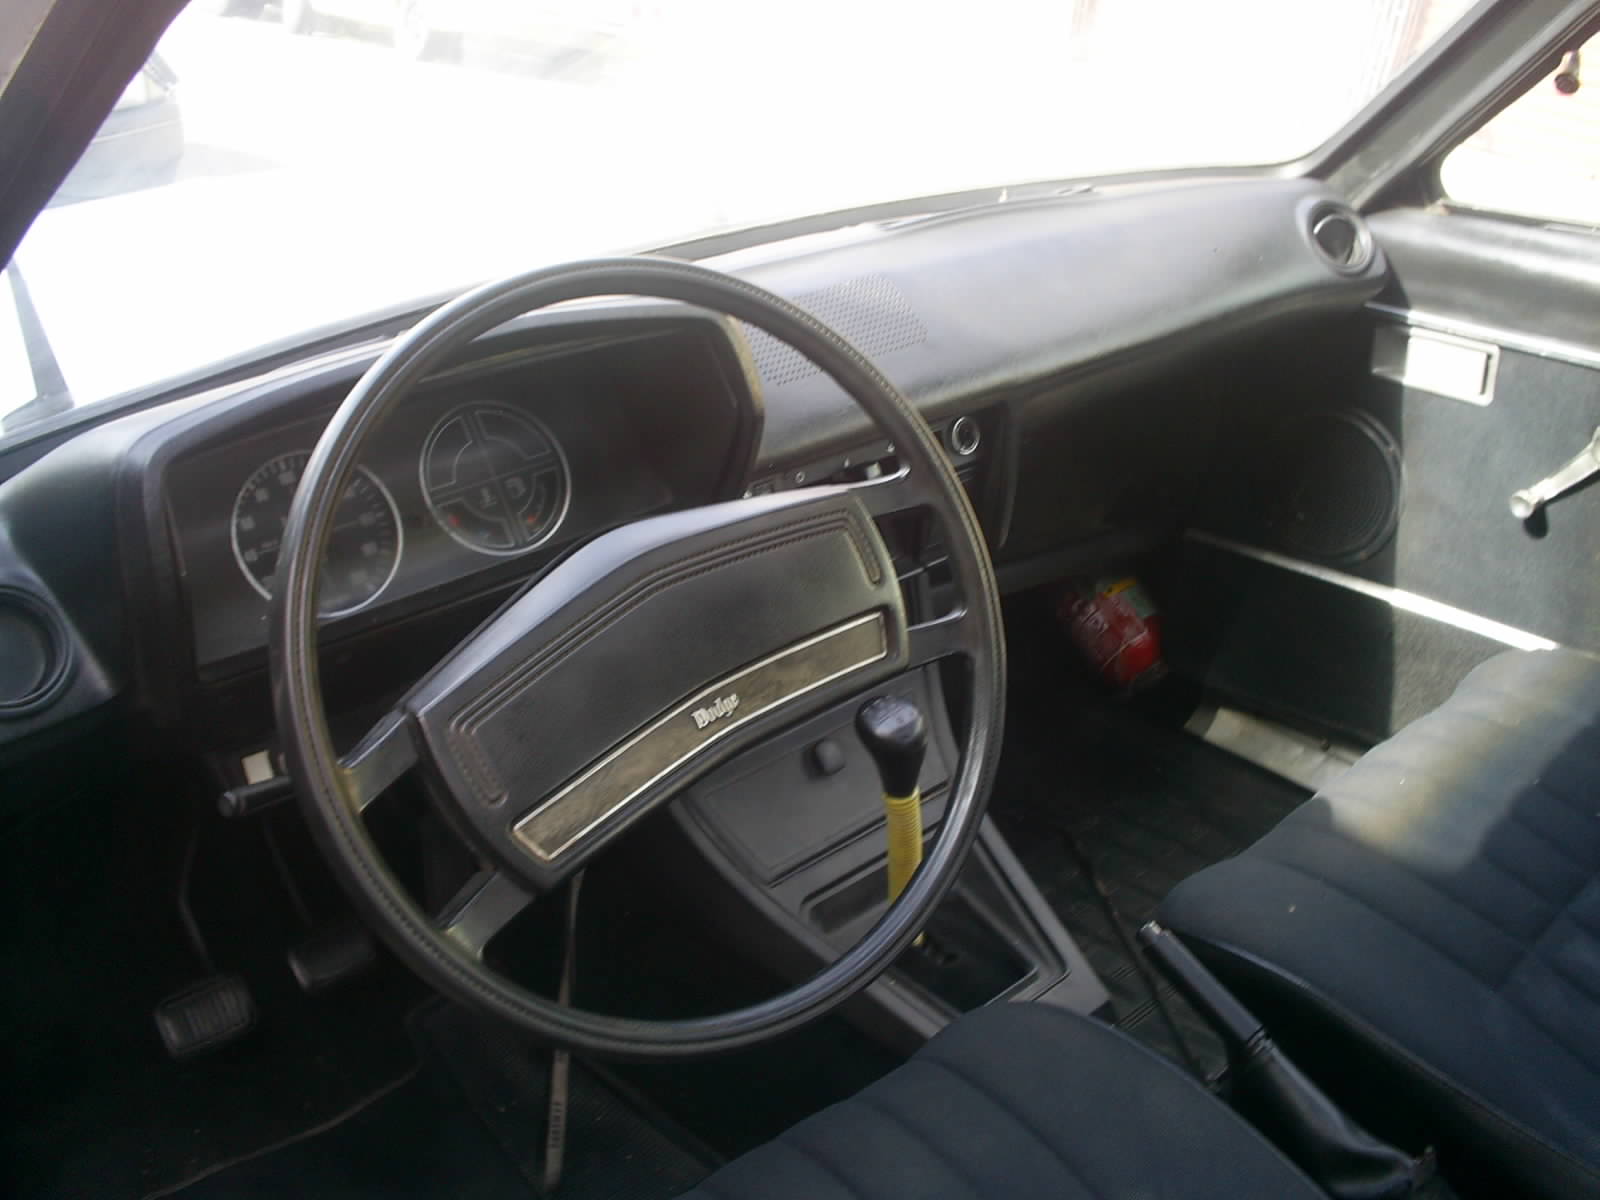 Conforme o prometido, segue as fotos do Dodge Polara GL 1981,